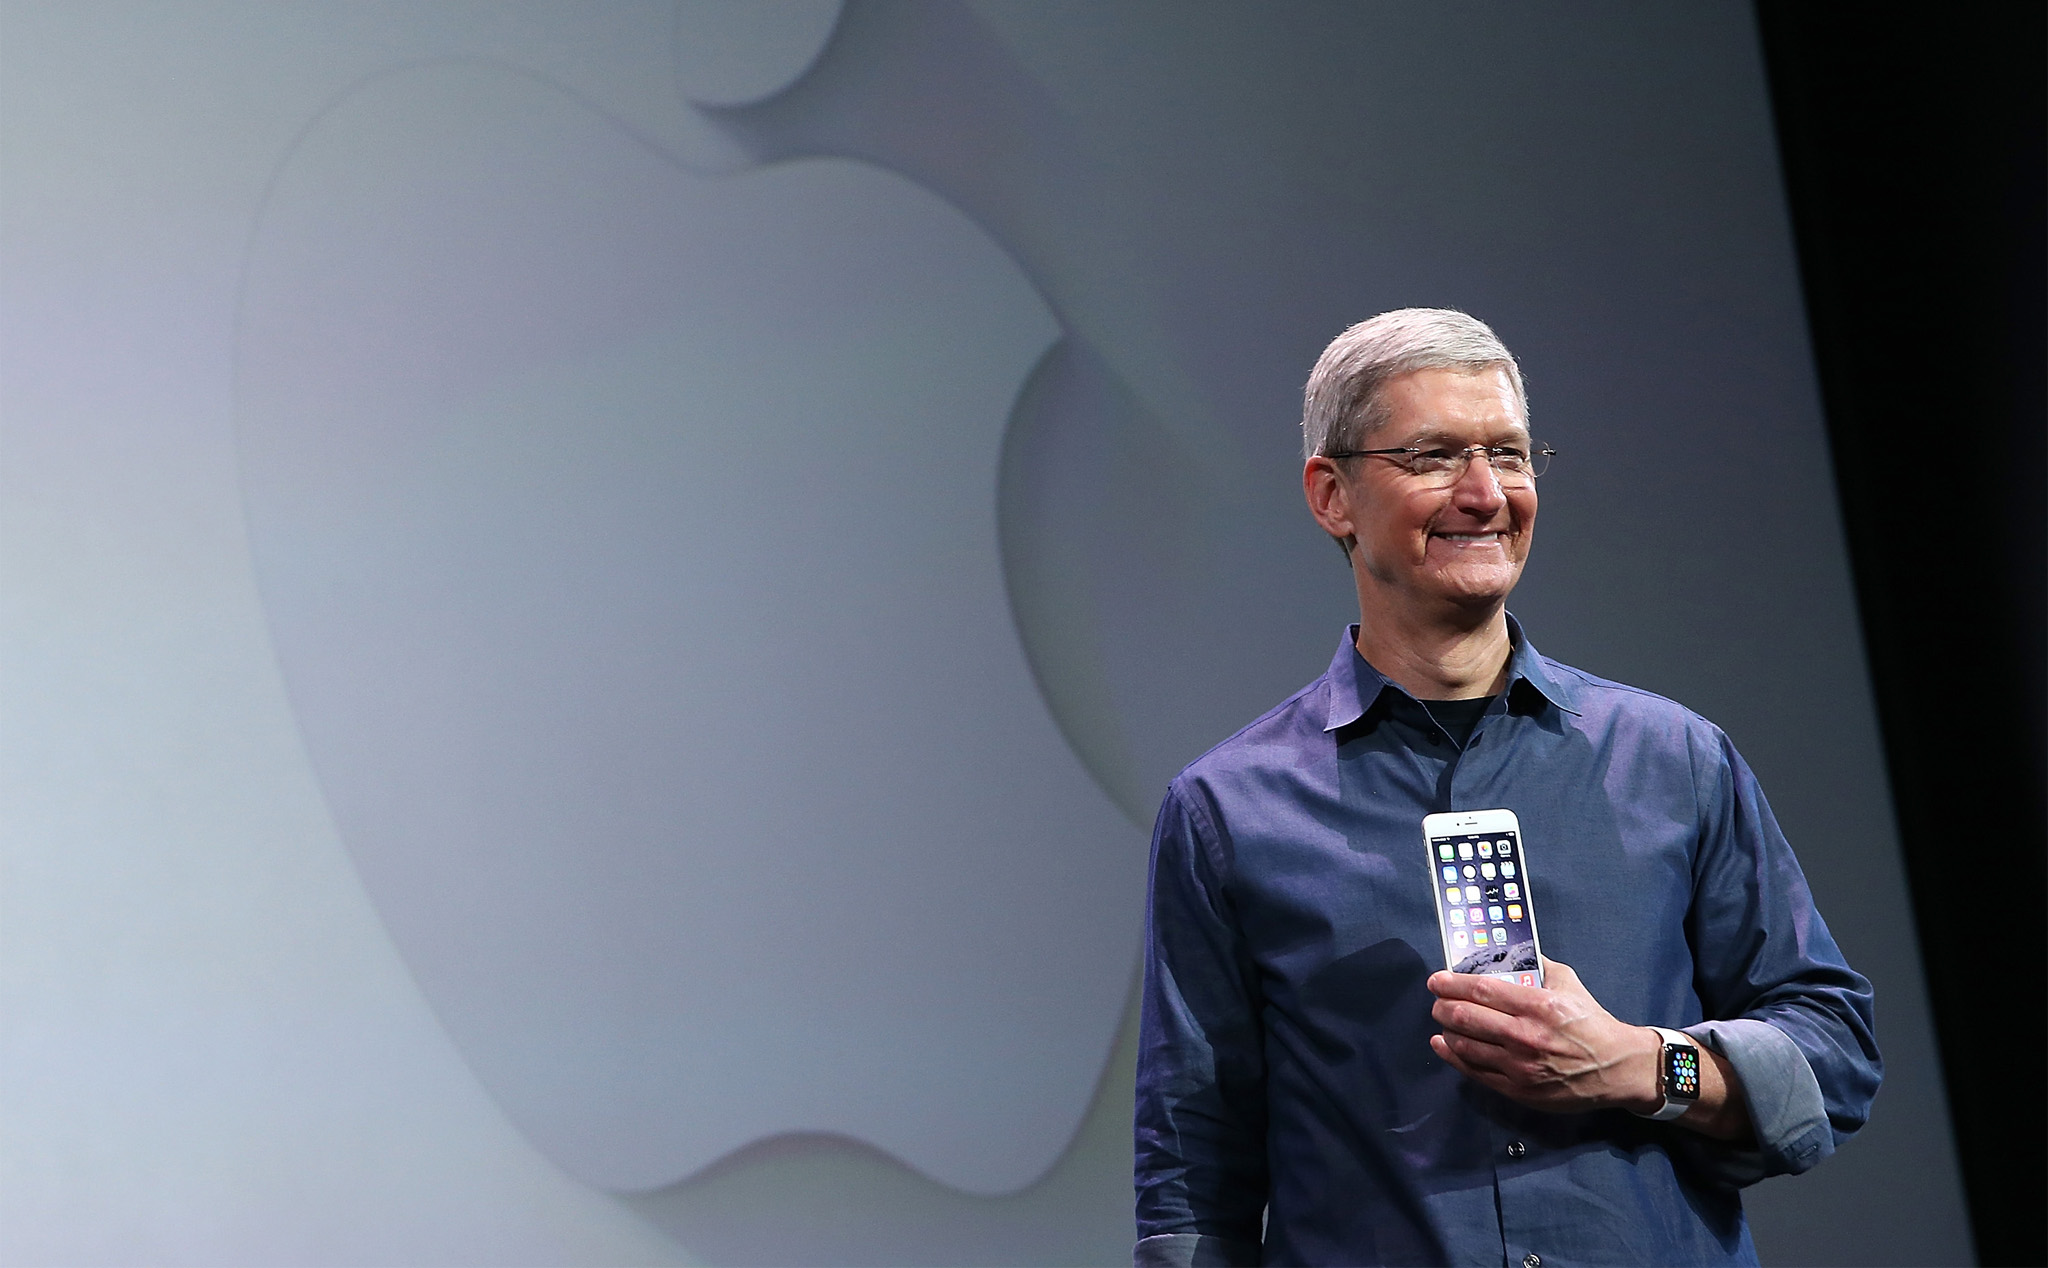 Tác giả cuốn tiểu sử về Tim Cook: “Ở Apple, Tim Cook là CEO tốt hơn Steve Jobs”